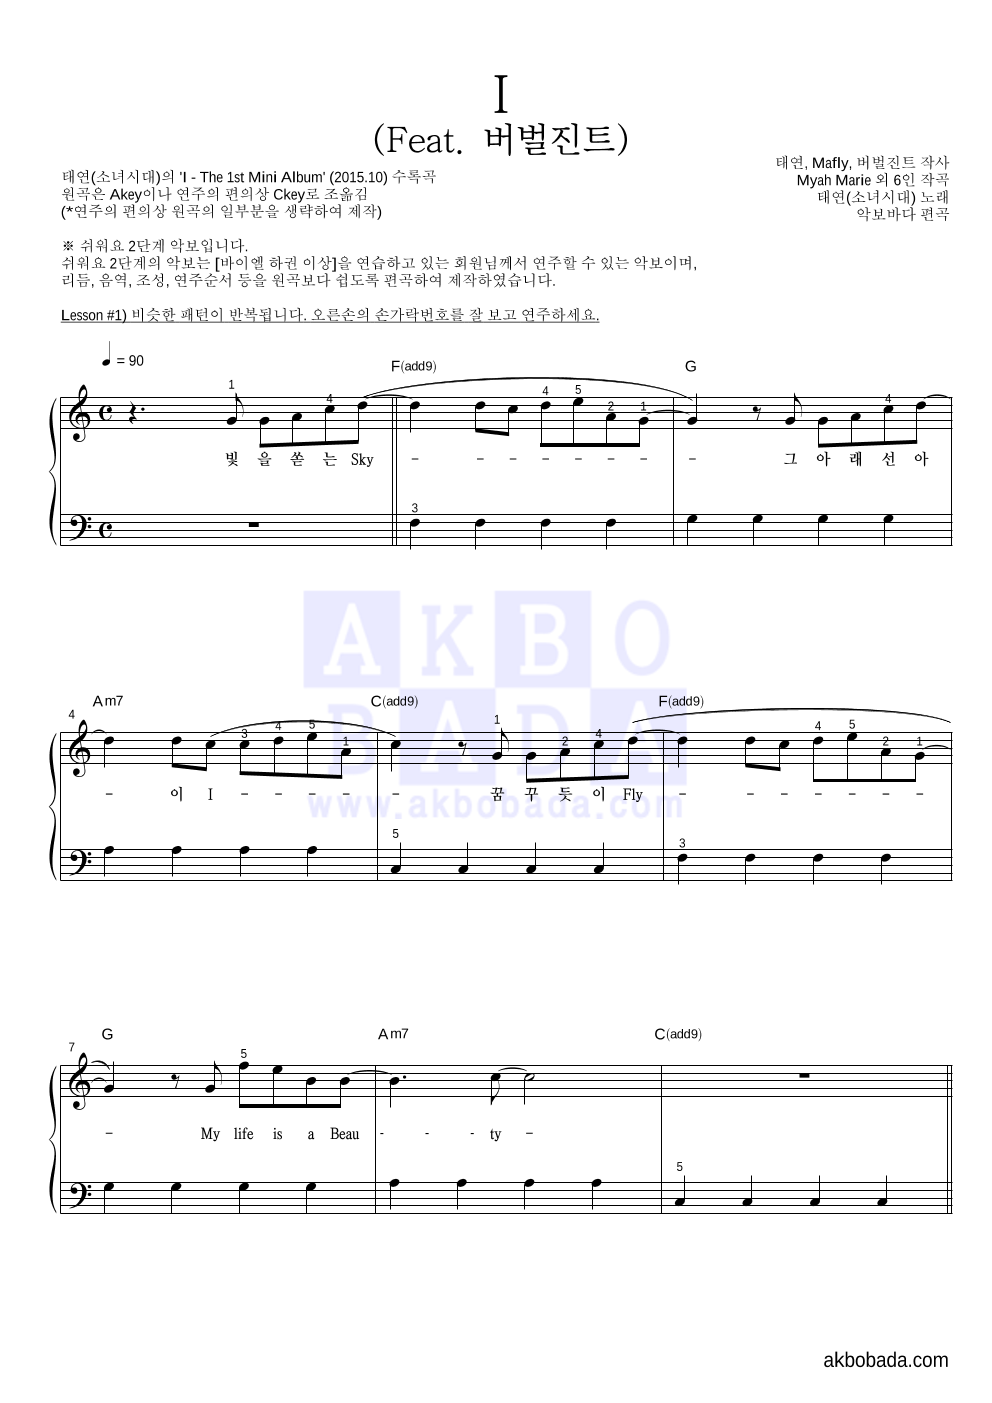 태연 - I (Feat. 버벌진트) 피아노2단-쉬워요 악보 